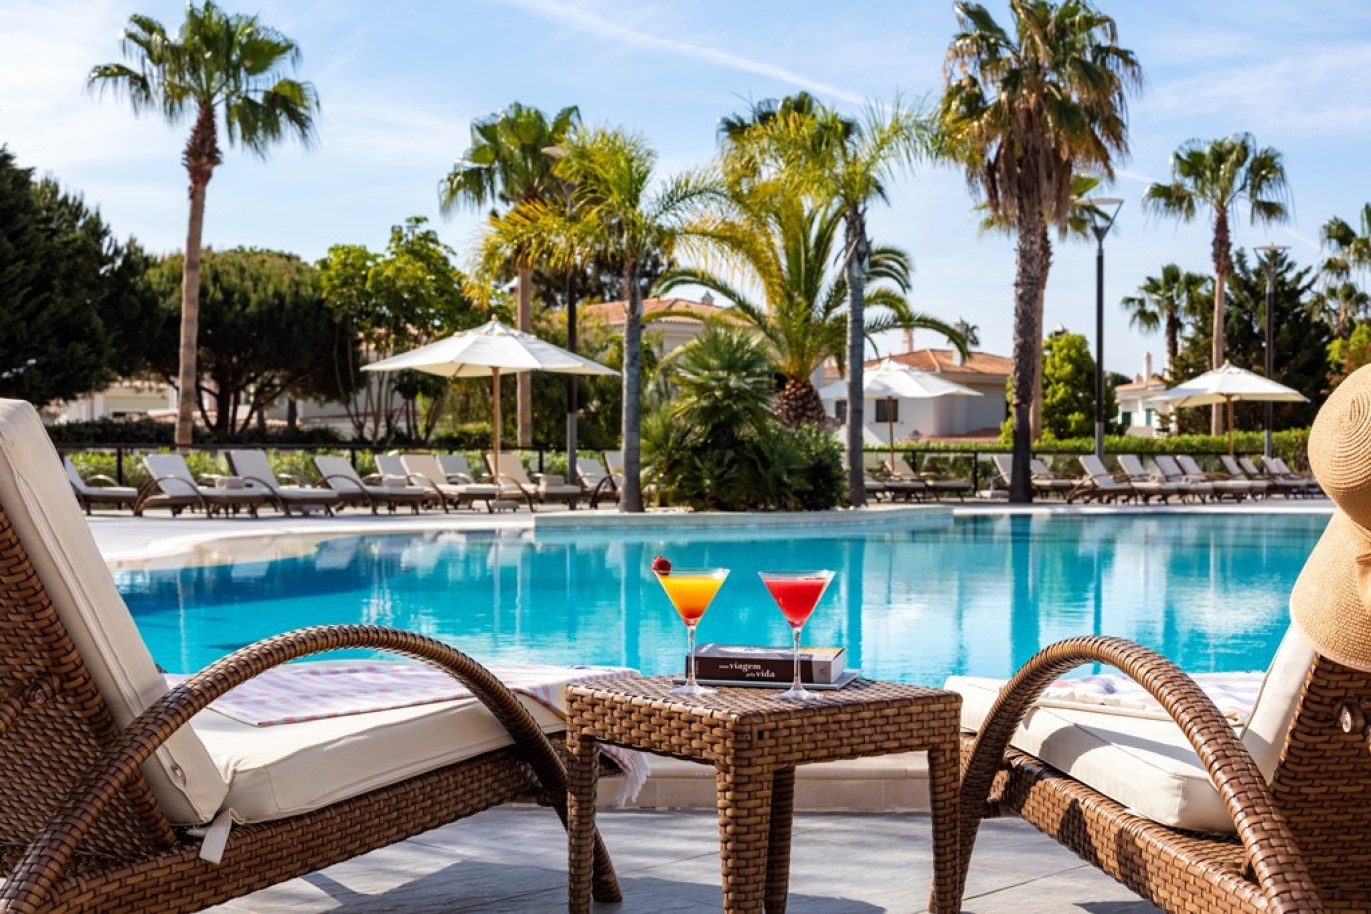 Apartamento, 2 quartos, piscina, para venda na Quinta do Lago, Algarve_263483